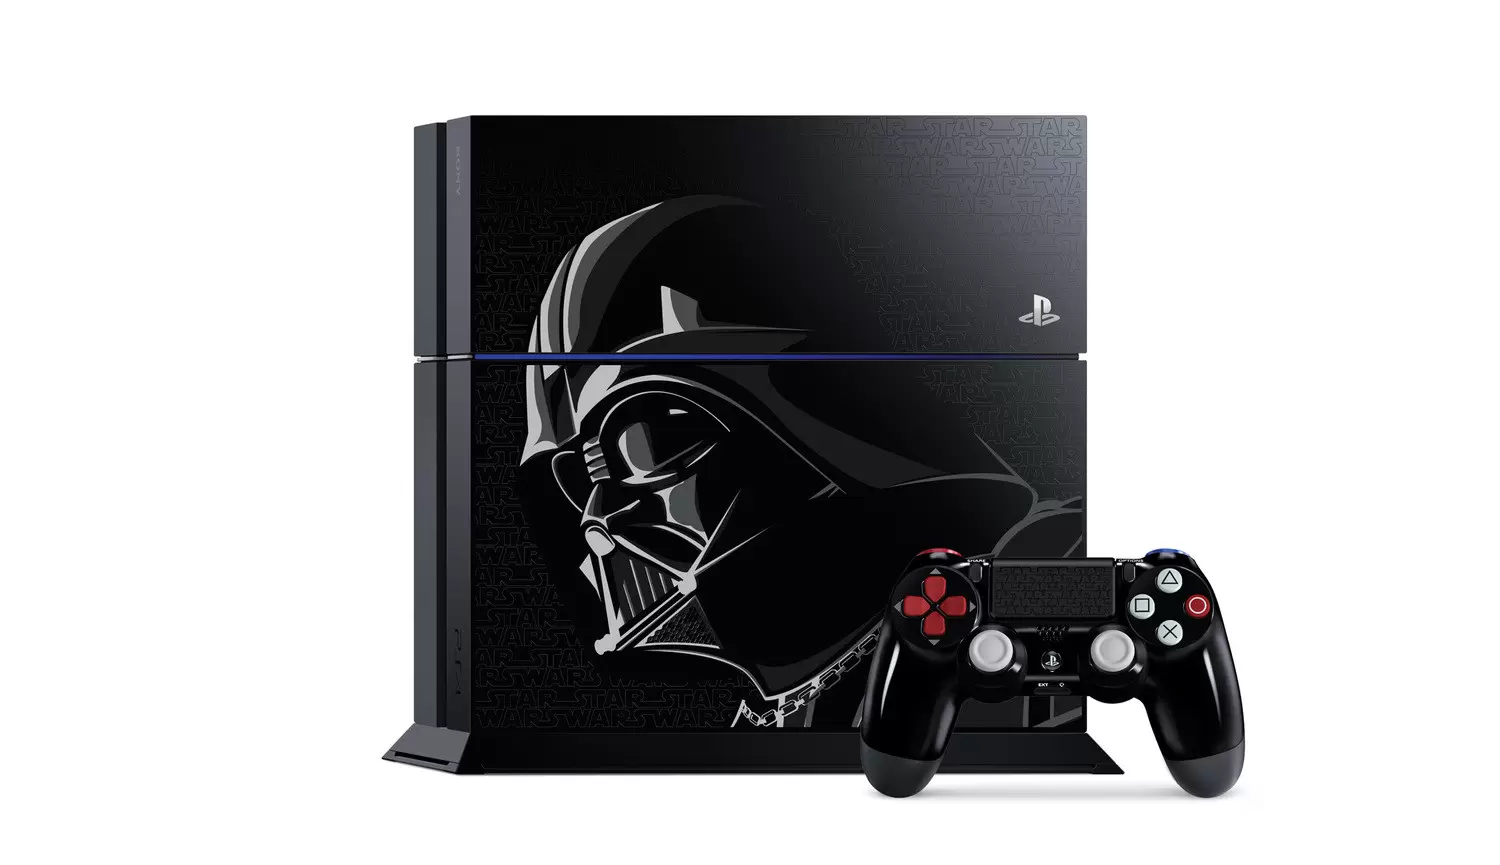 Matériel PS4 - PlayStation 4 - Star Wars Battlefront